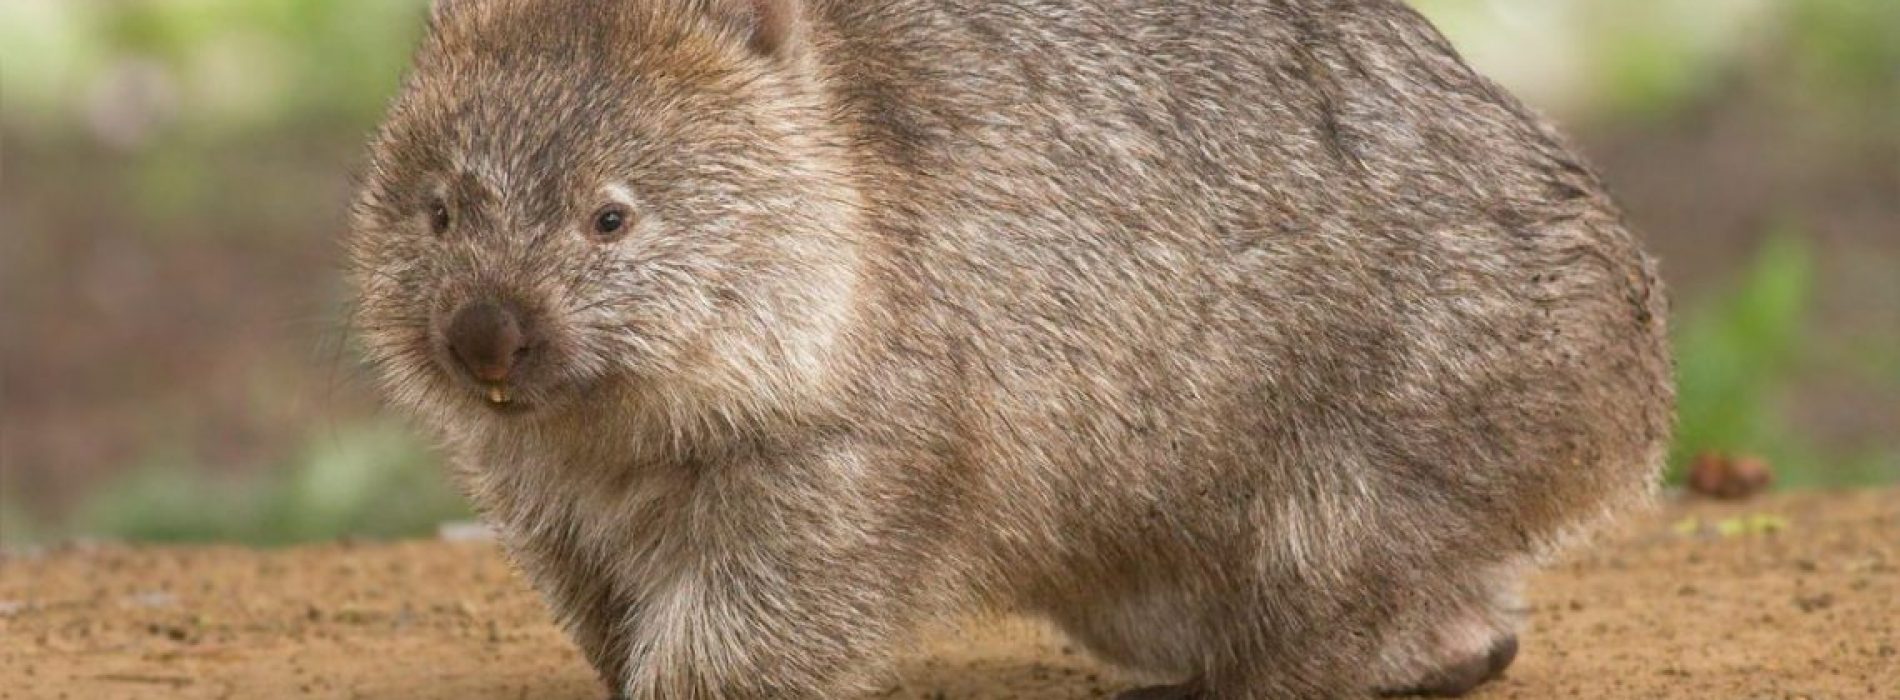 Wombats zijn de helden van de Australische branden, die dieren onderbrengen in hun holen